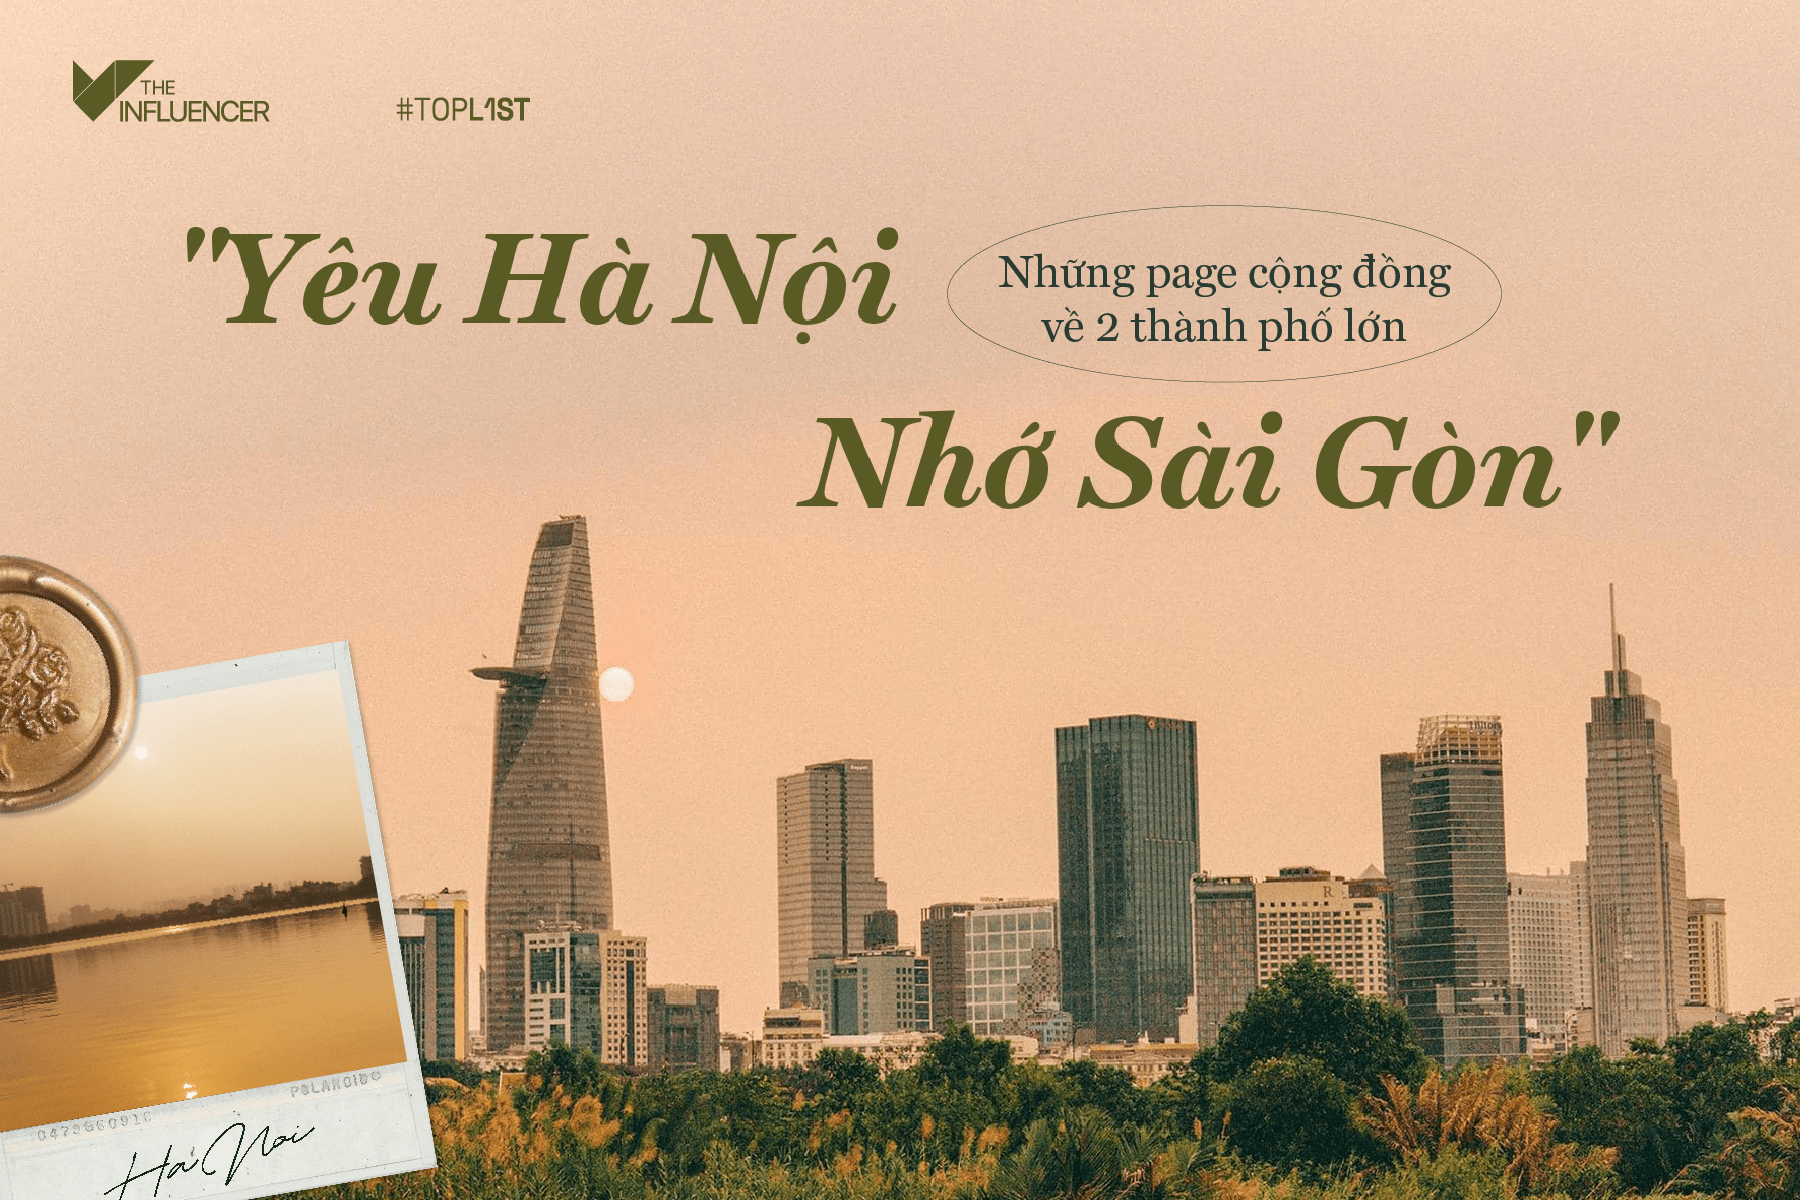 Toplist: "Yêu Hà Nội - Nhớ Sài Gòn": Những page cộng đồng về 2 thành phố lớn